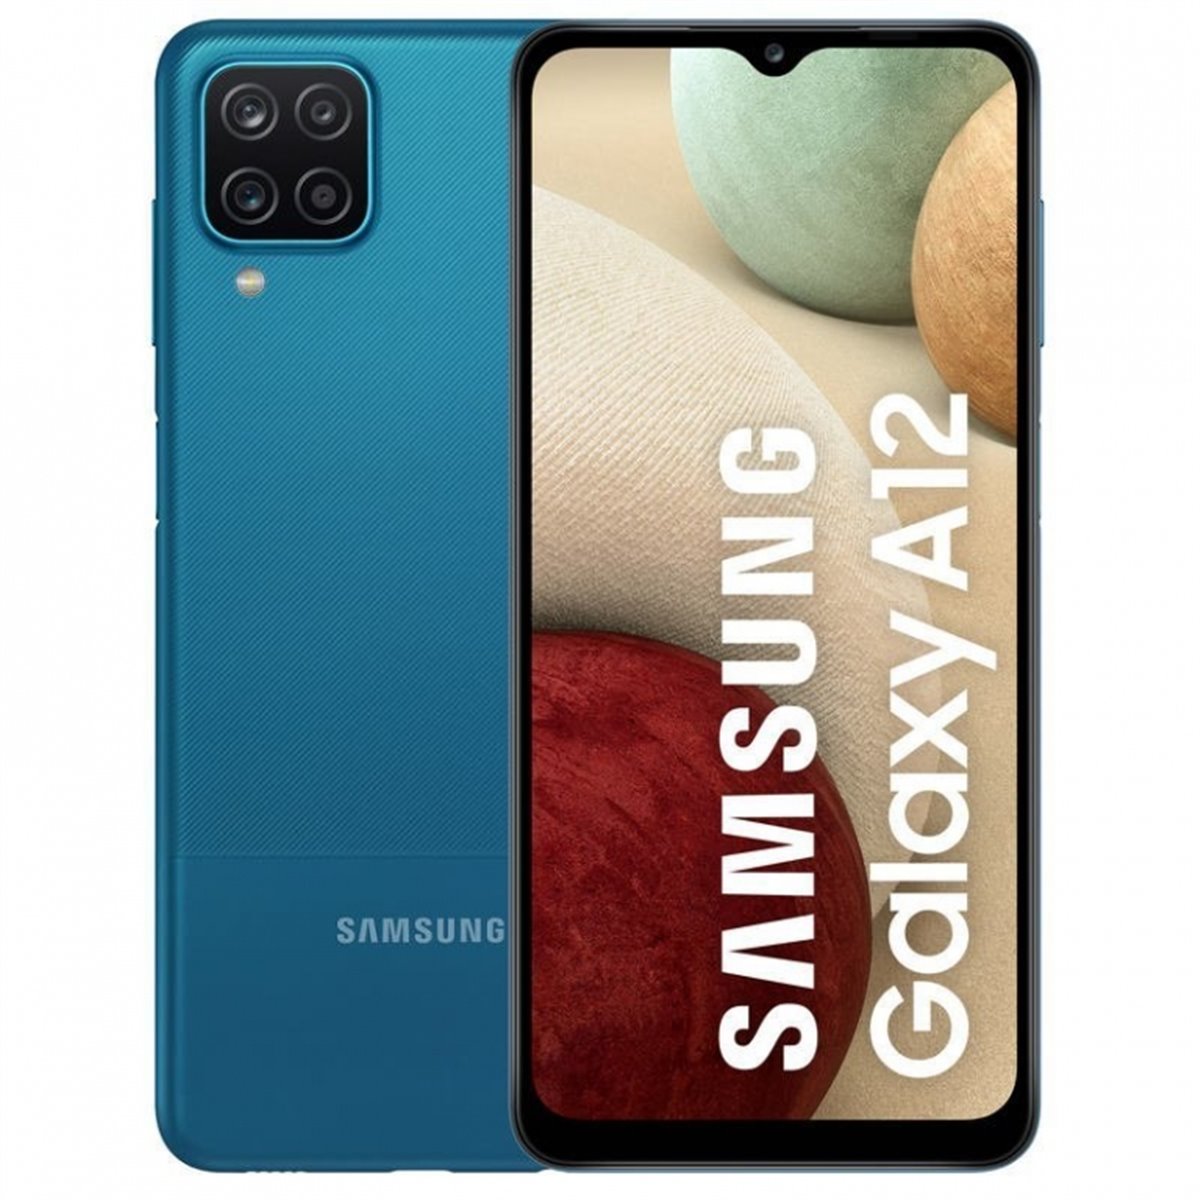 Samsung Galaxy A12 A127 Dual Sim 3GB RAM 32GB Blue EU